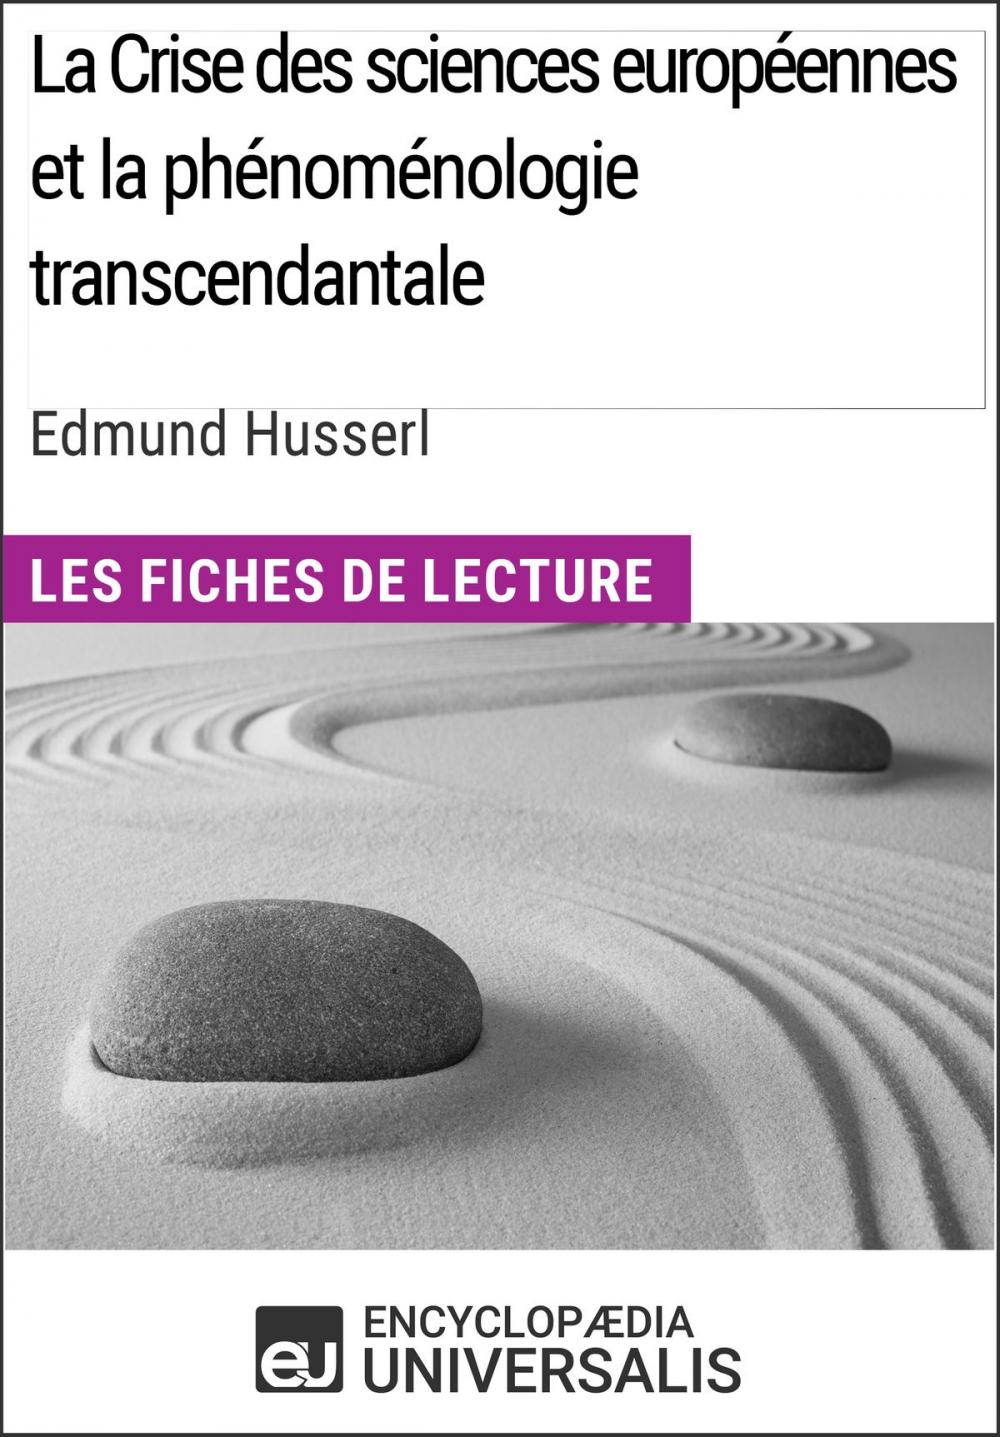 Big bigCover of La Crise des sciences européennes et la phénoménologie transcendantale d'Edmund Husserl